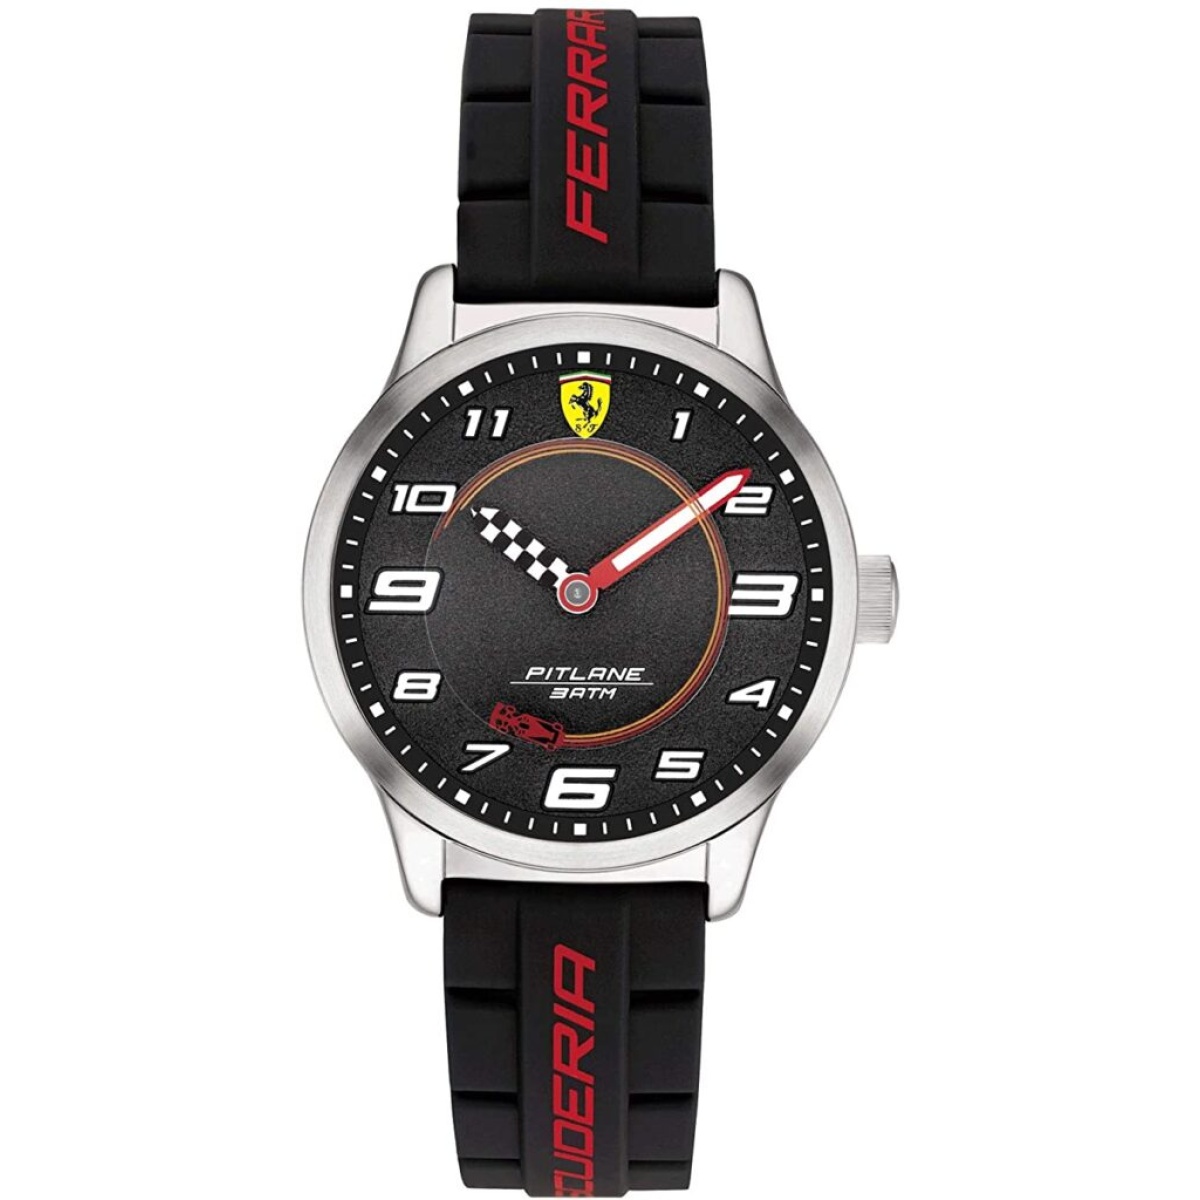 Orologio da polso Ferrari PITLANE - 0870043